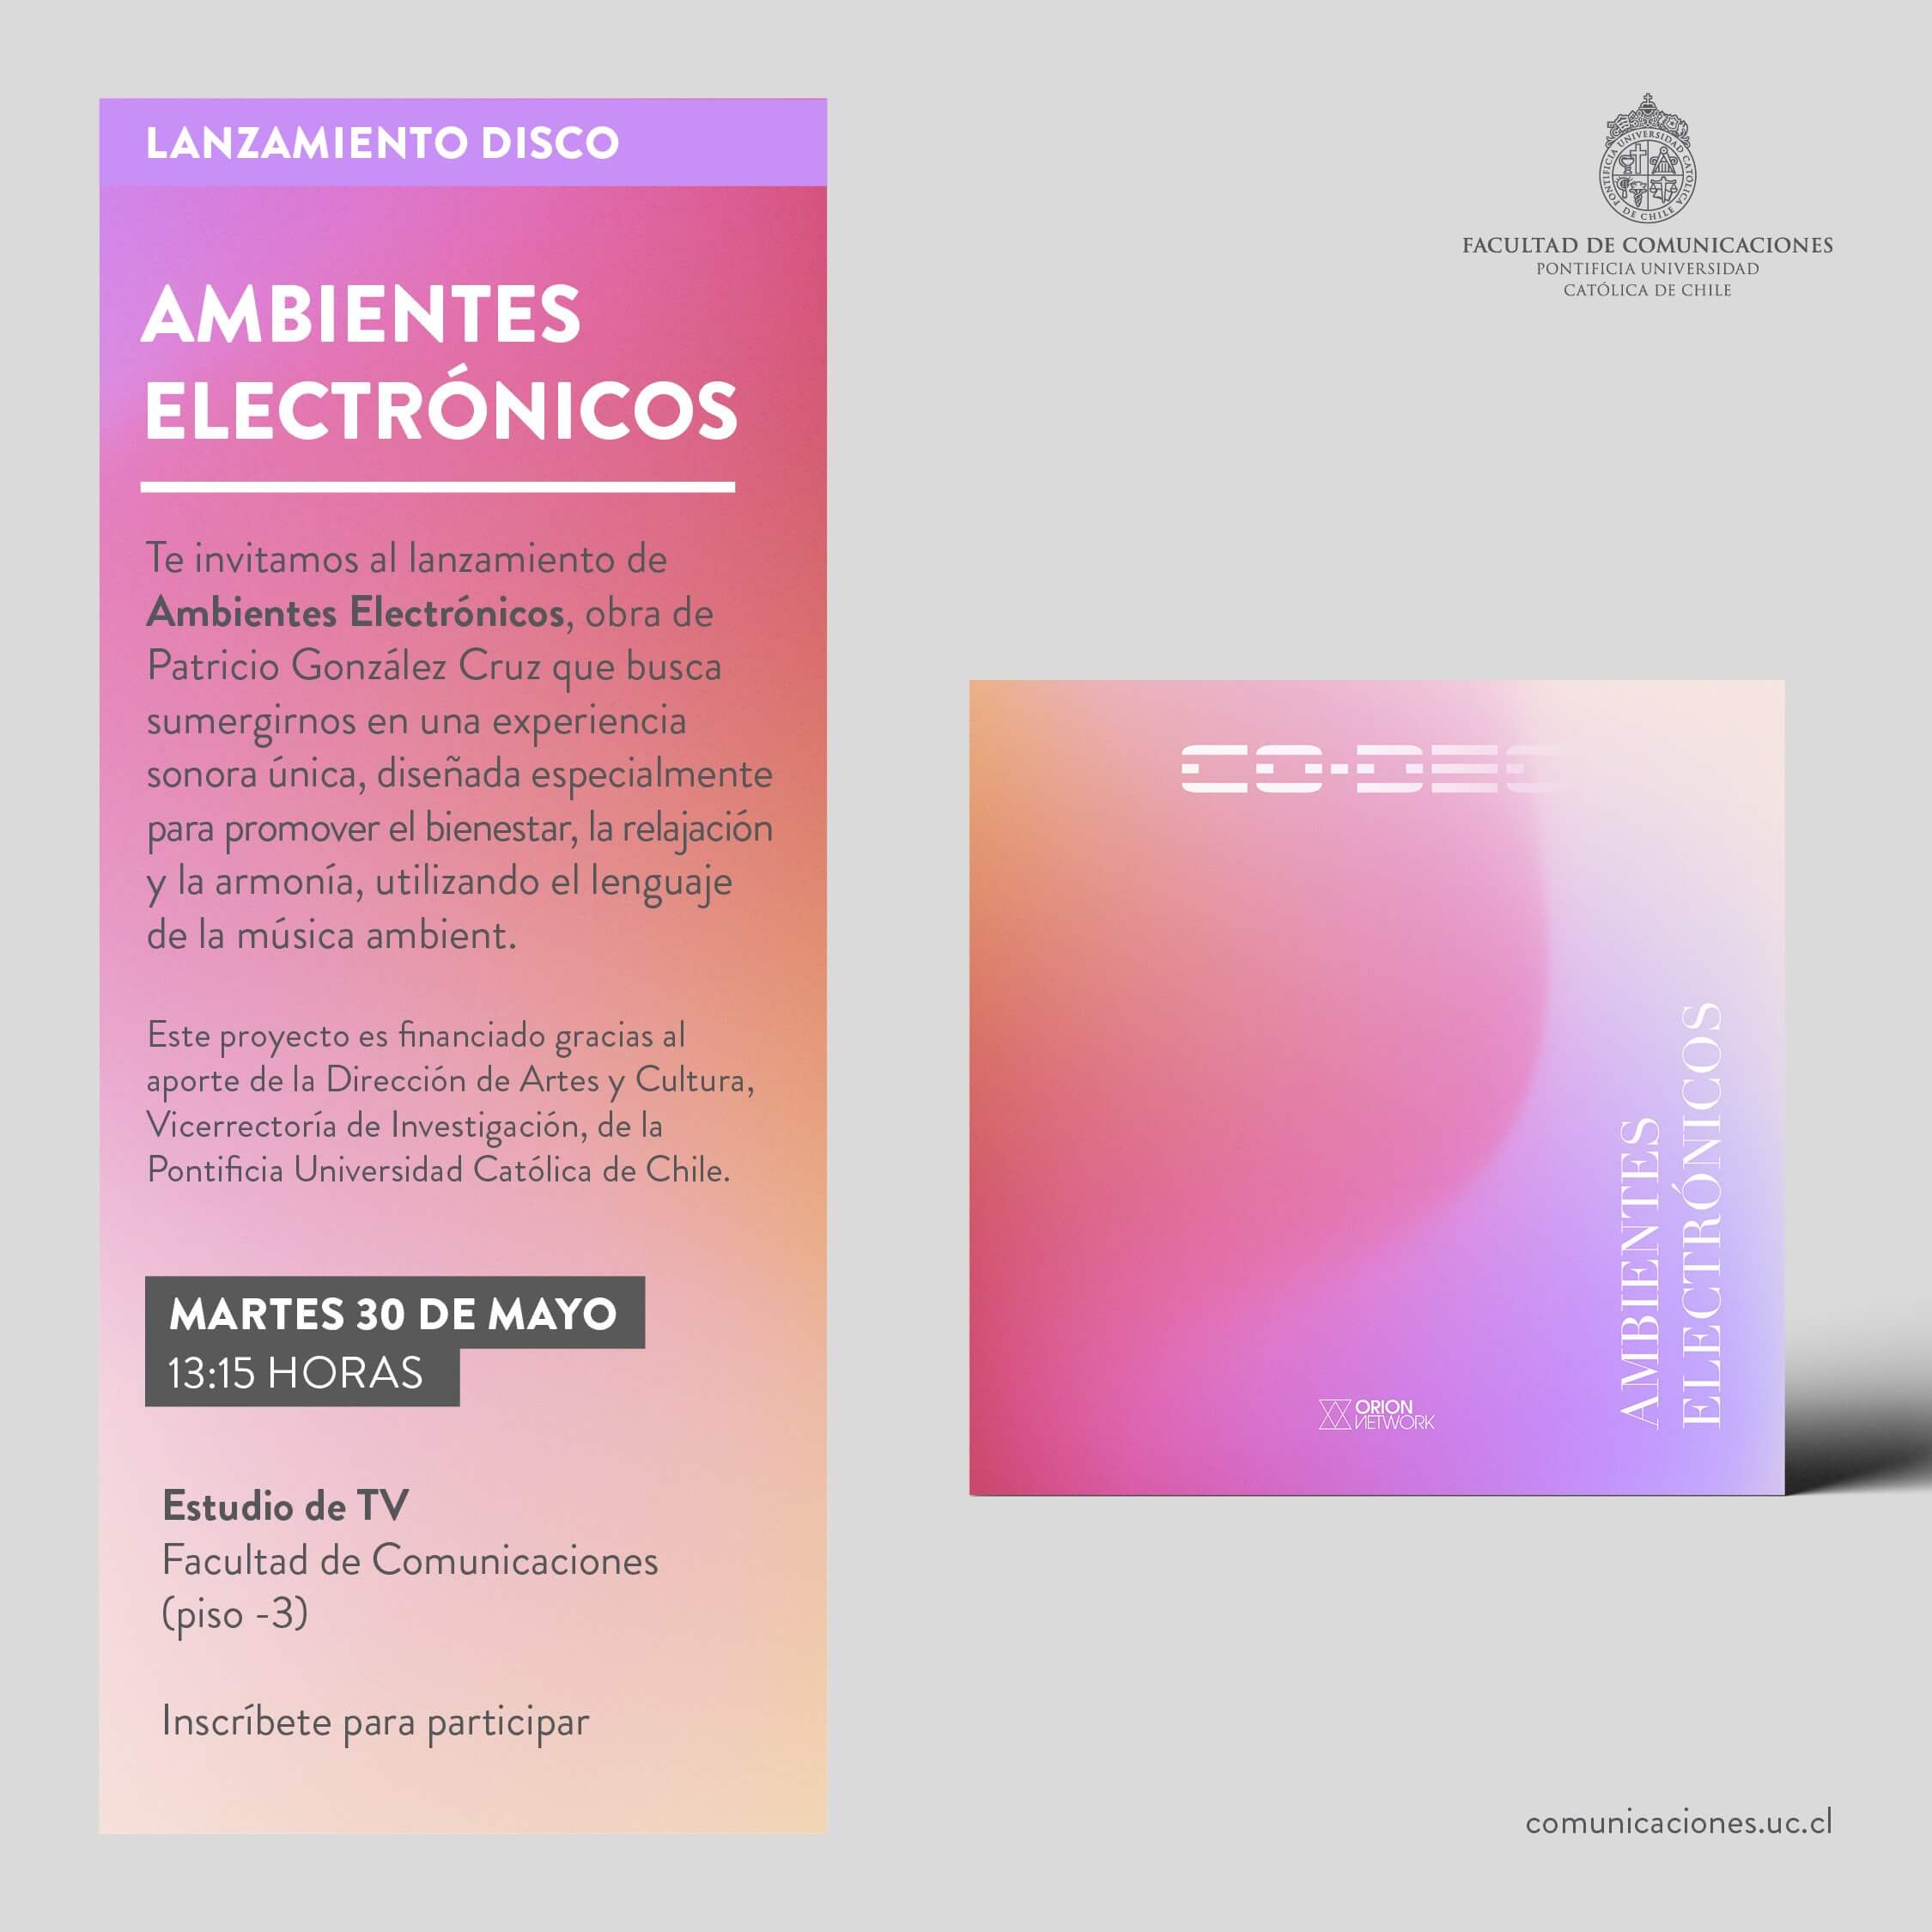 Afiche que anuncia el lanzamiento del disco "Ambientes electrónicos". La carátula del disco visible es de degradados rosas